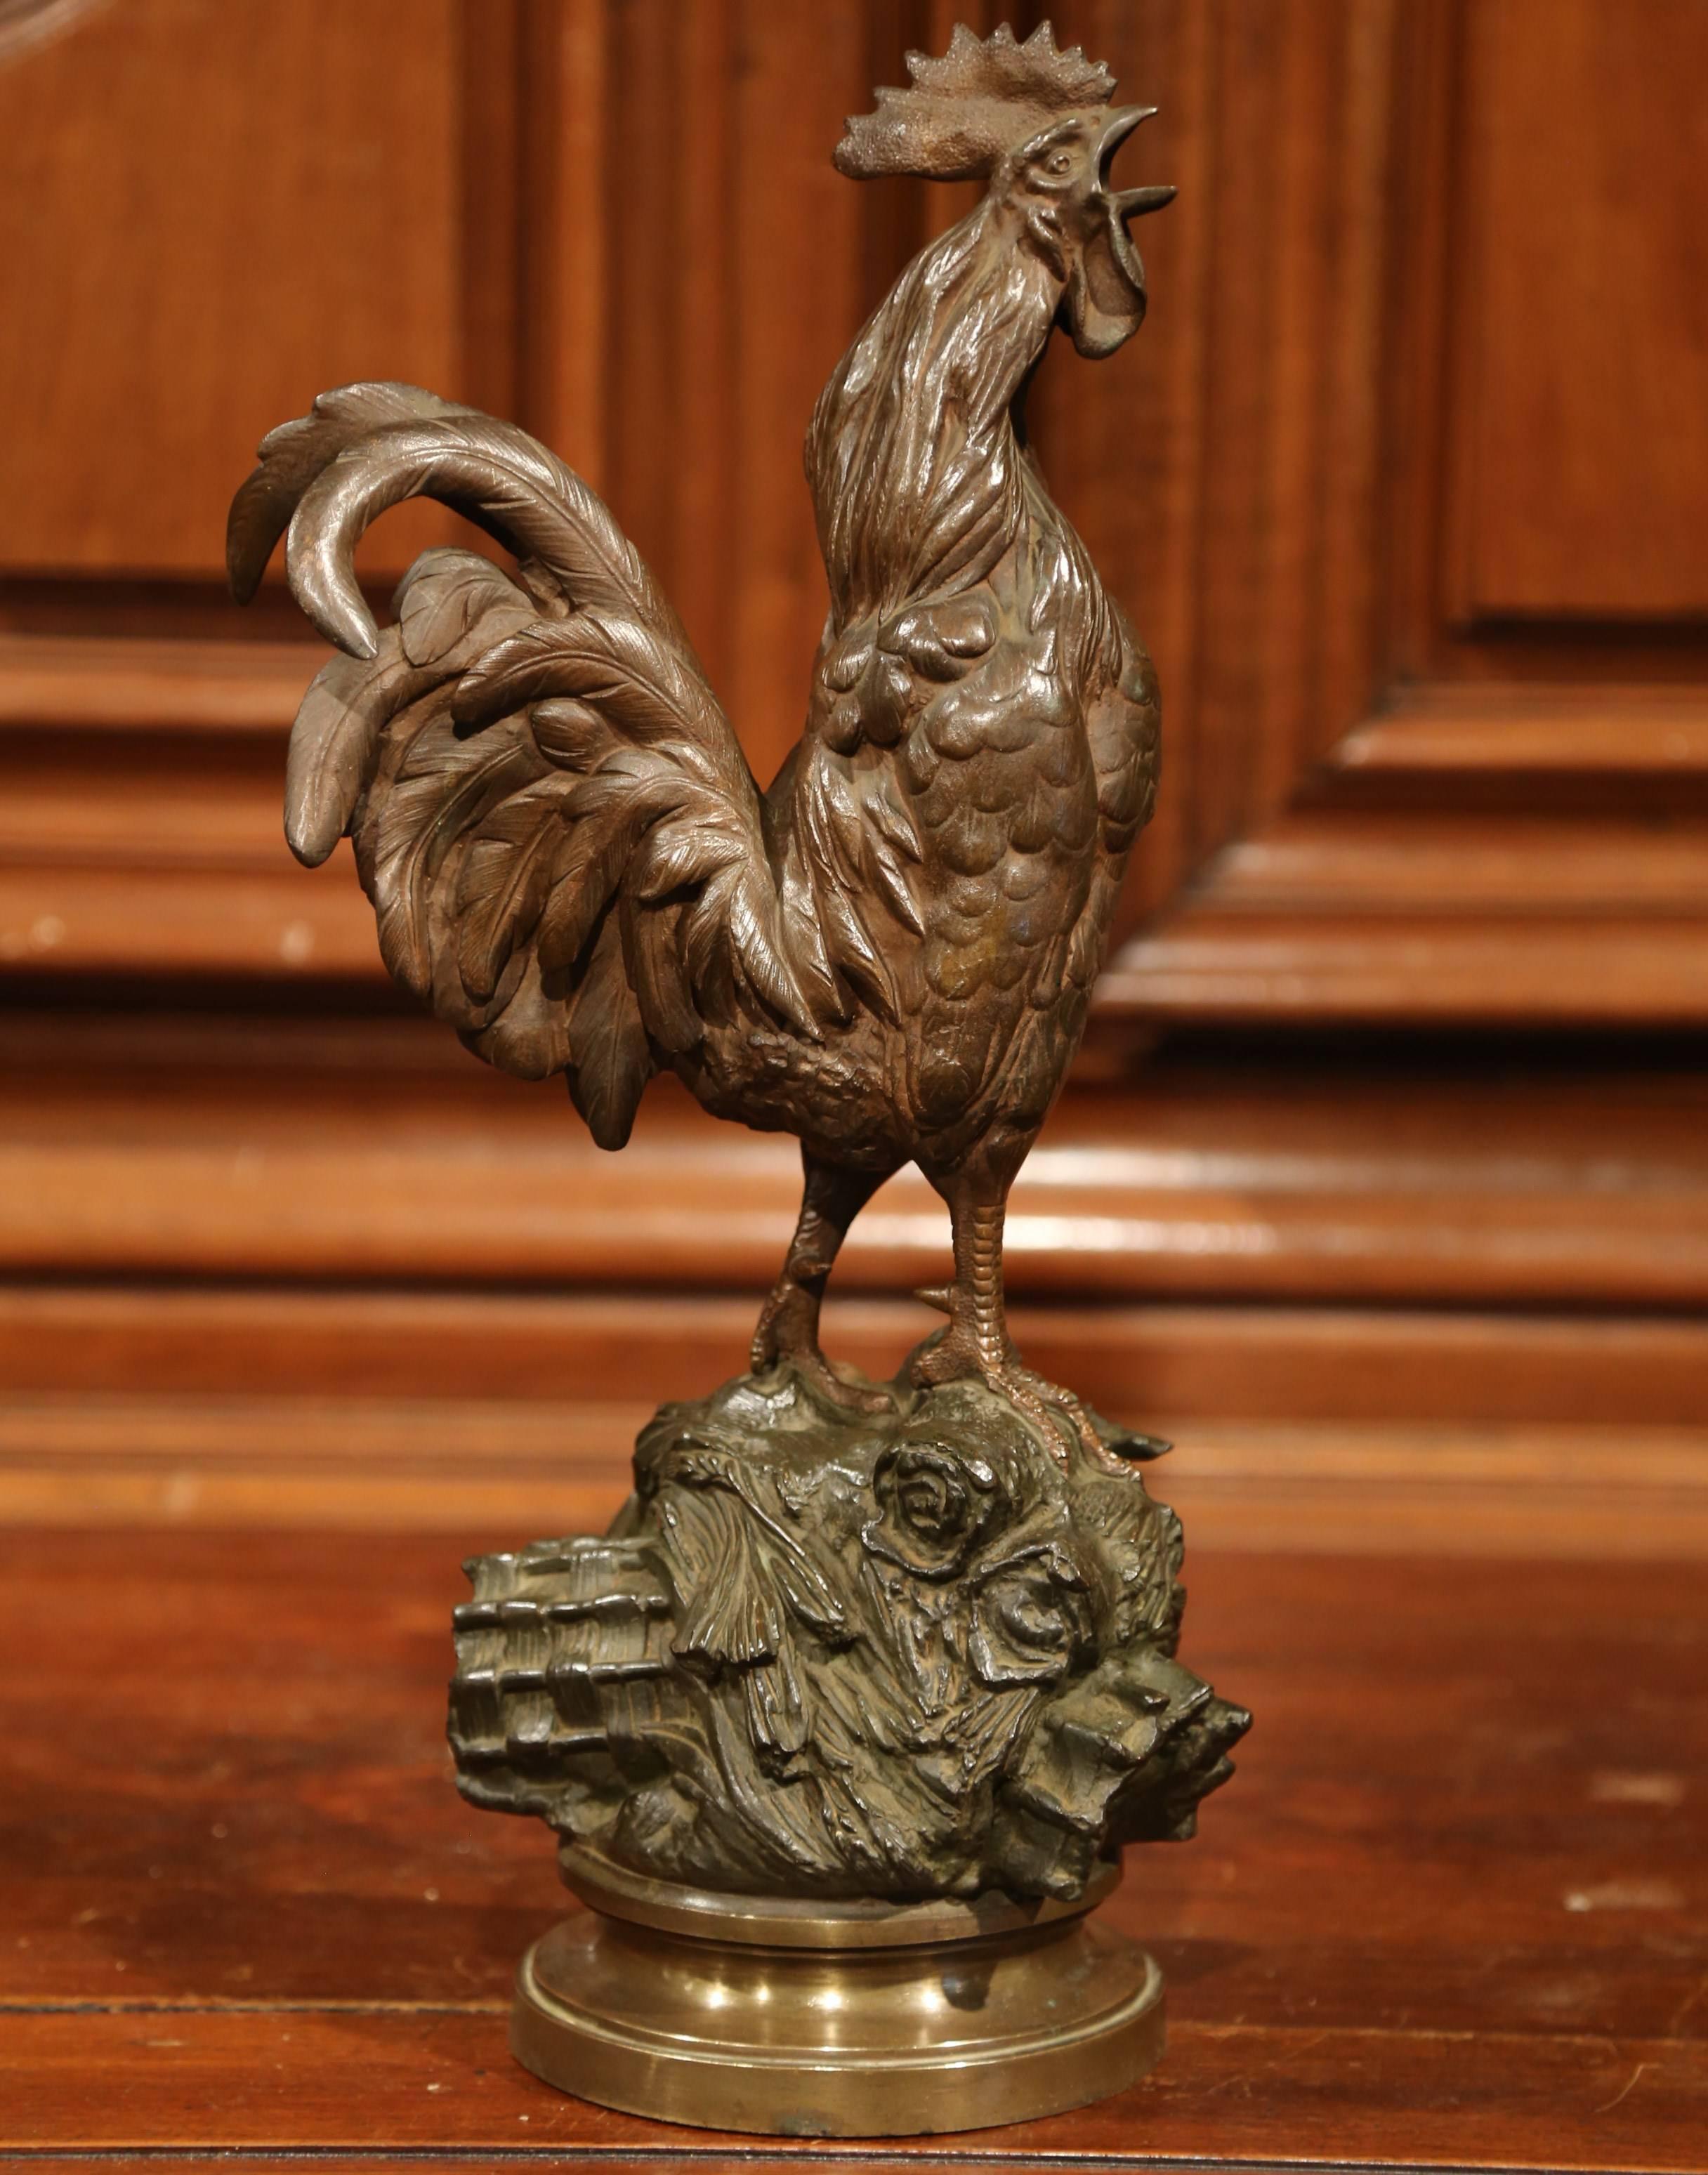 Cette sculpture classique, ancienne, en bronze, symbole traditionnel de la France, a été sculptée vers 1880. Le fier coq est en excellent état, présente une riche patine et est posé sur une base solide avec, roue, rochers, feuilles et blé. Cette